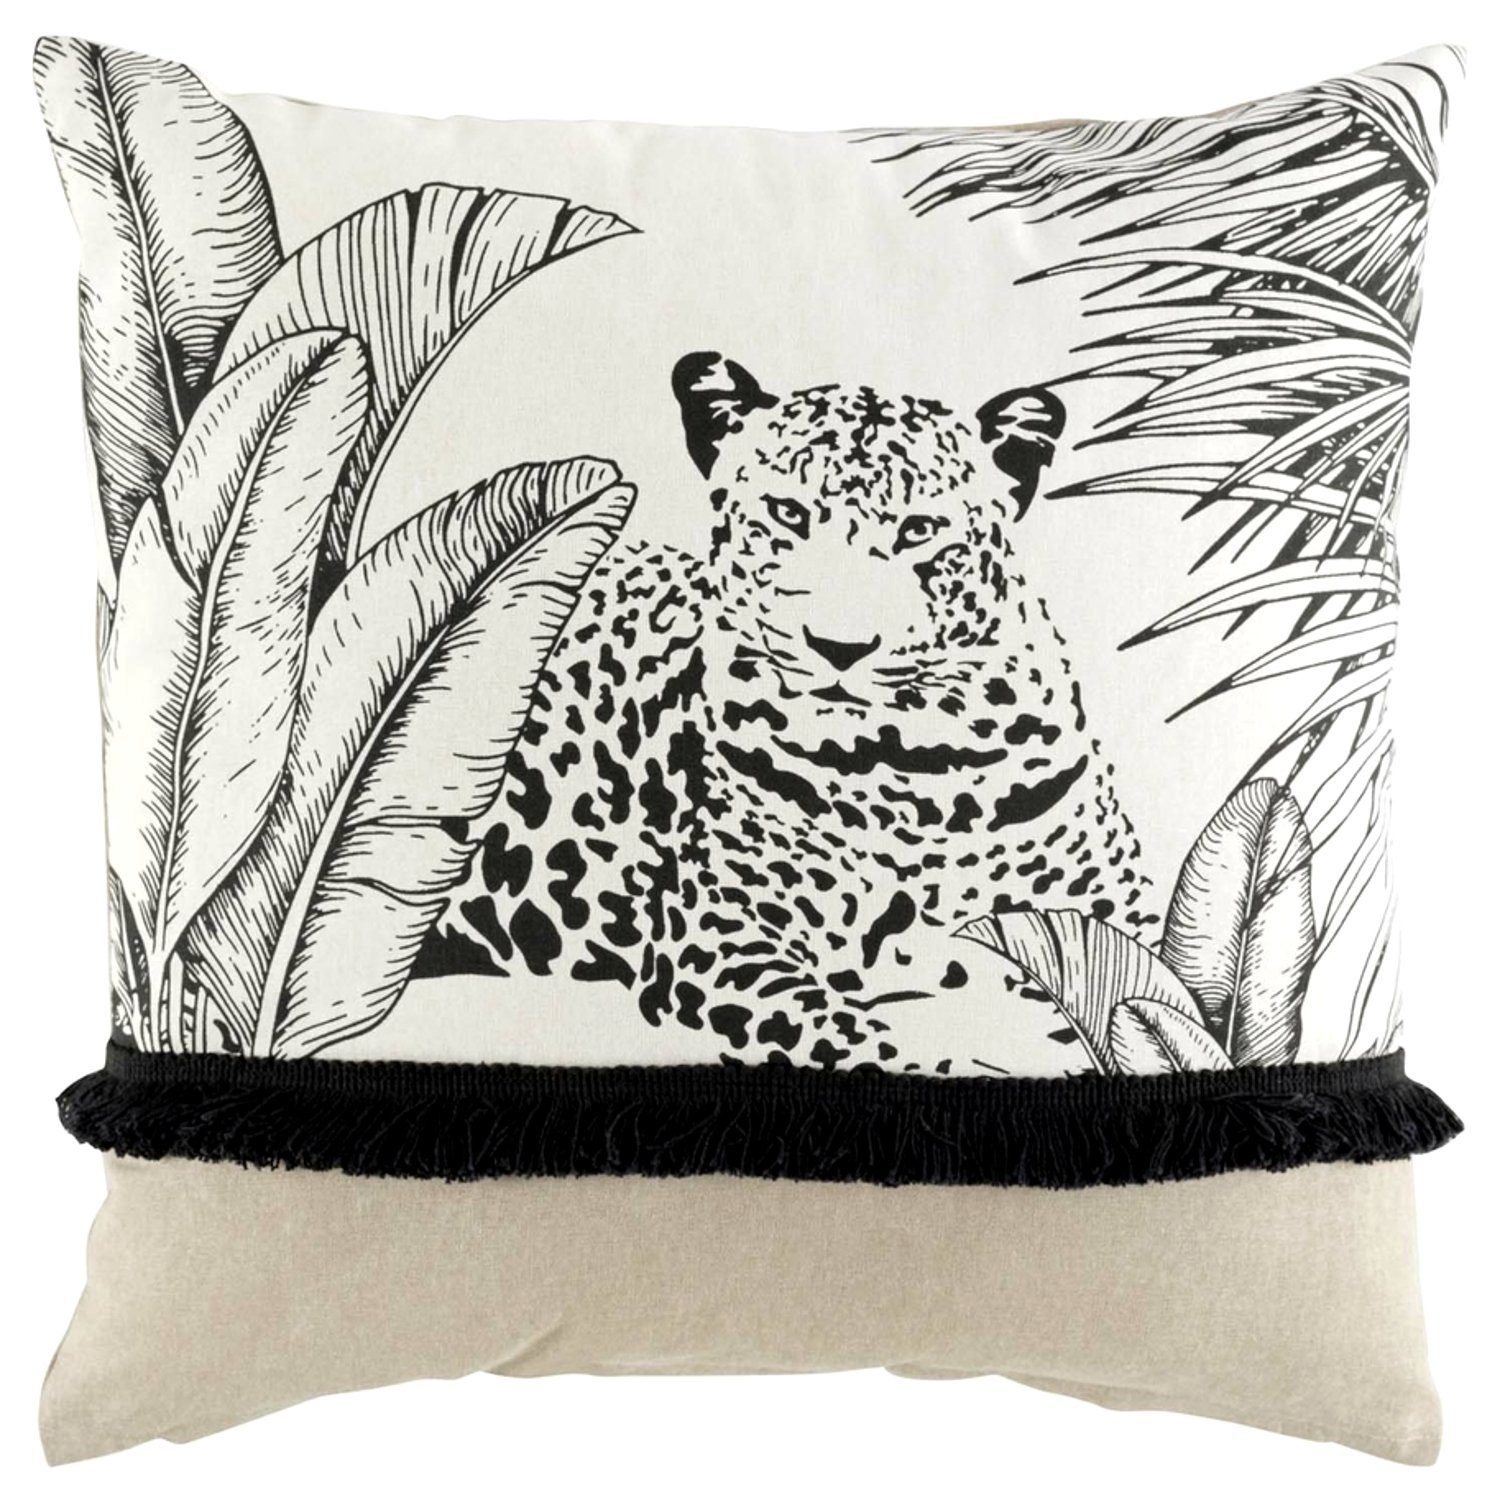 Macosa Home Dekokissen 45c45 cm weiß beige schwarz Leopard inkl. Füllung Tiere Dschungel, Baumwolle, Sofakissen, Zierkissen, länglich